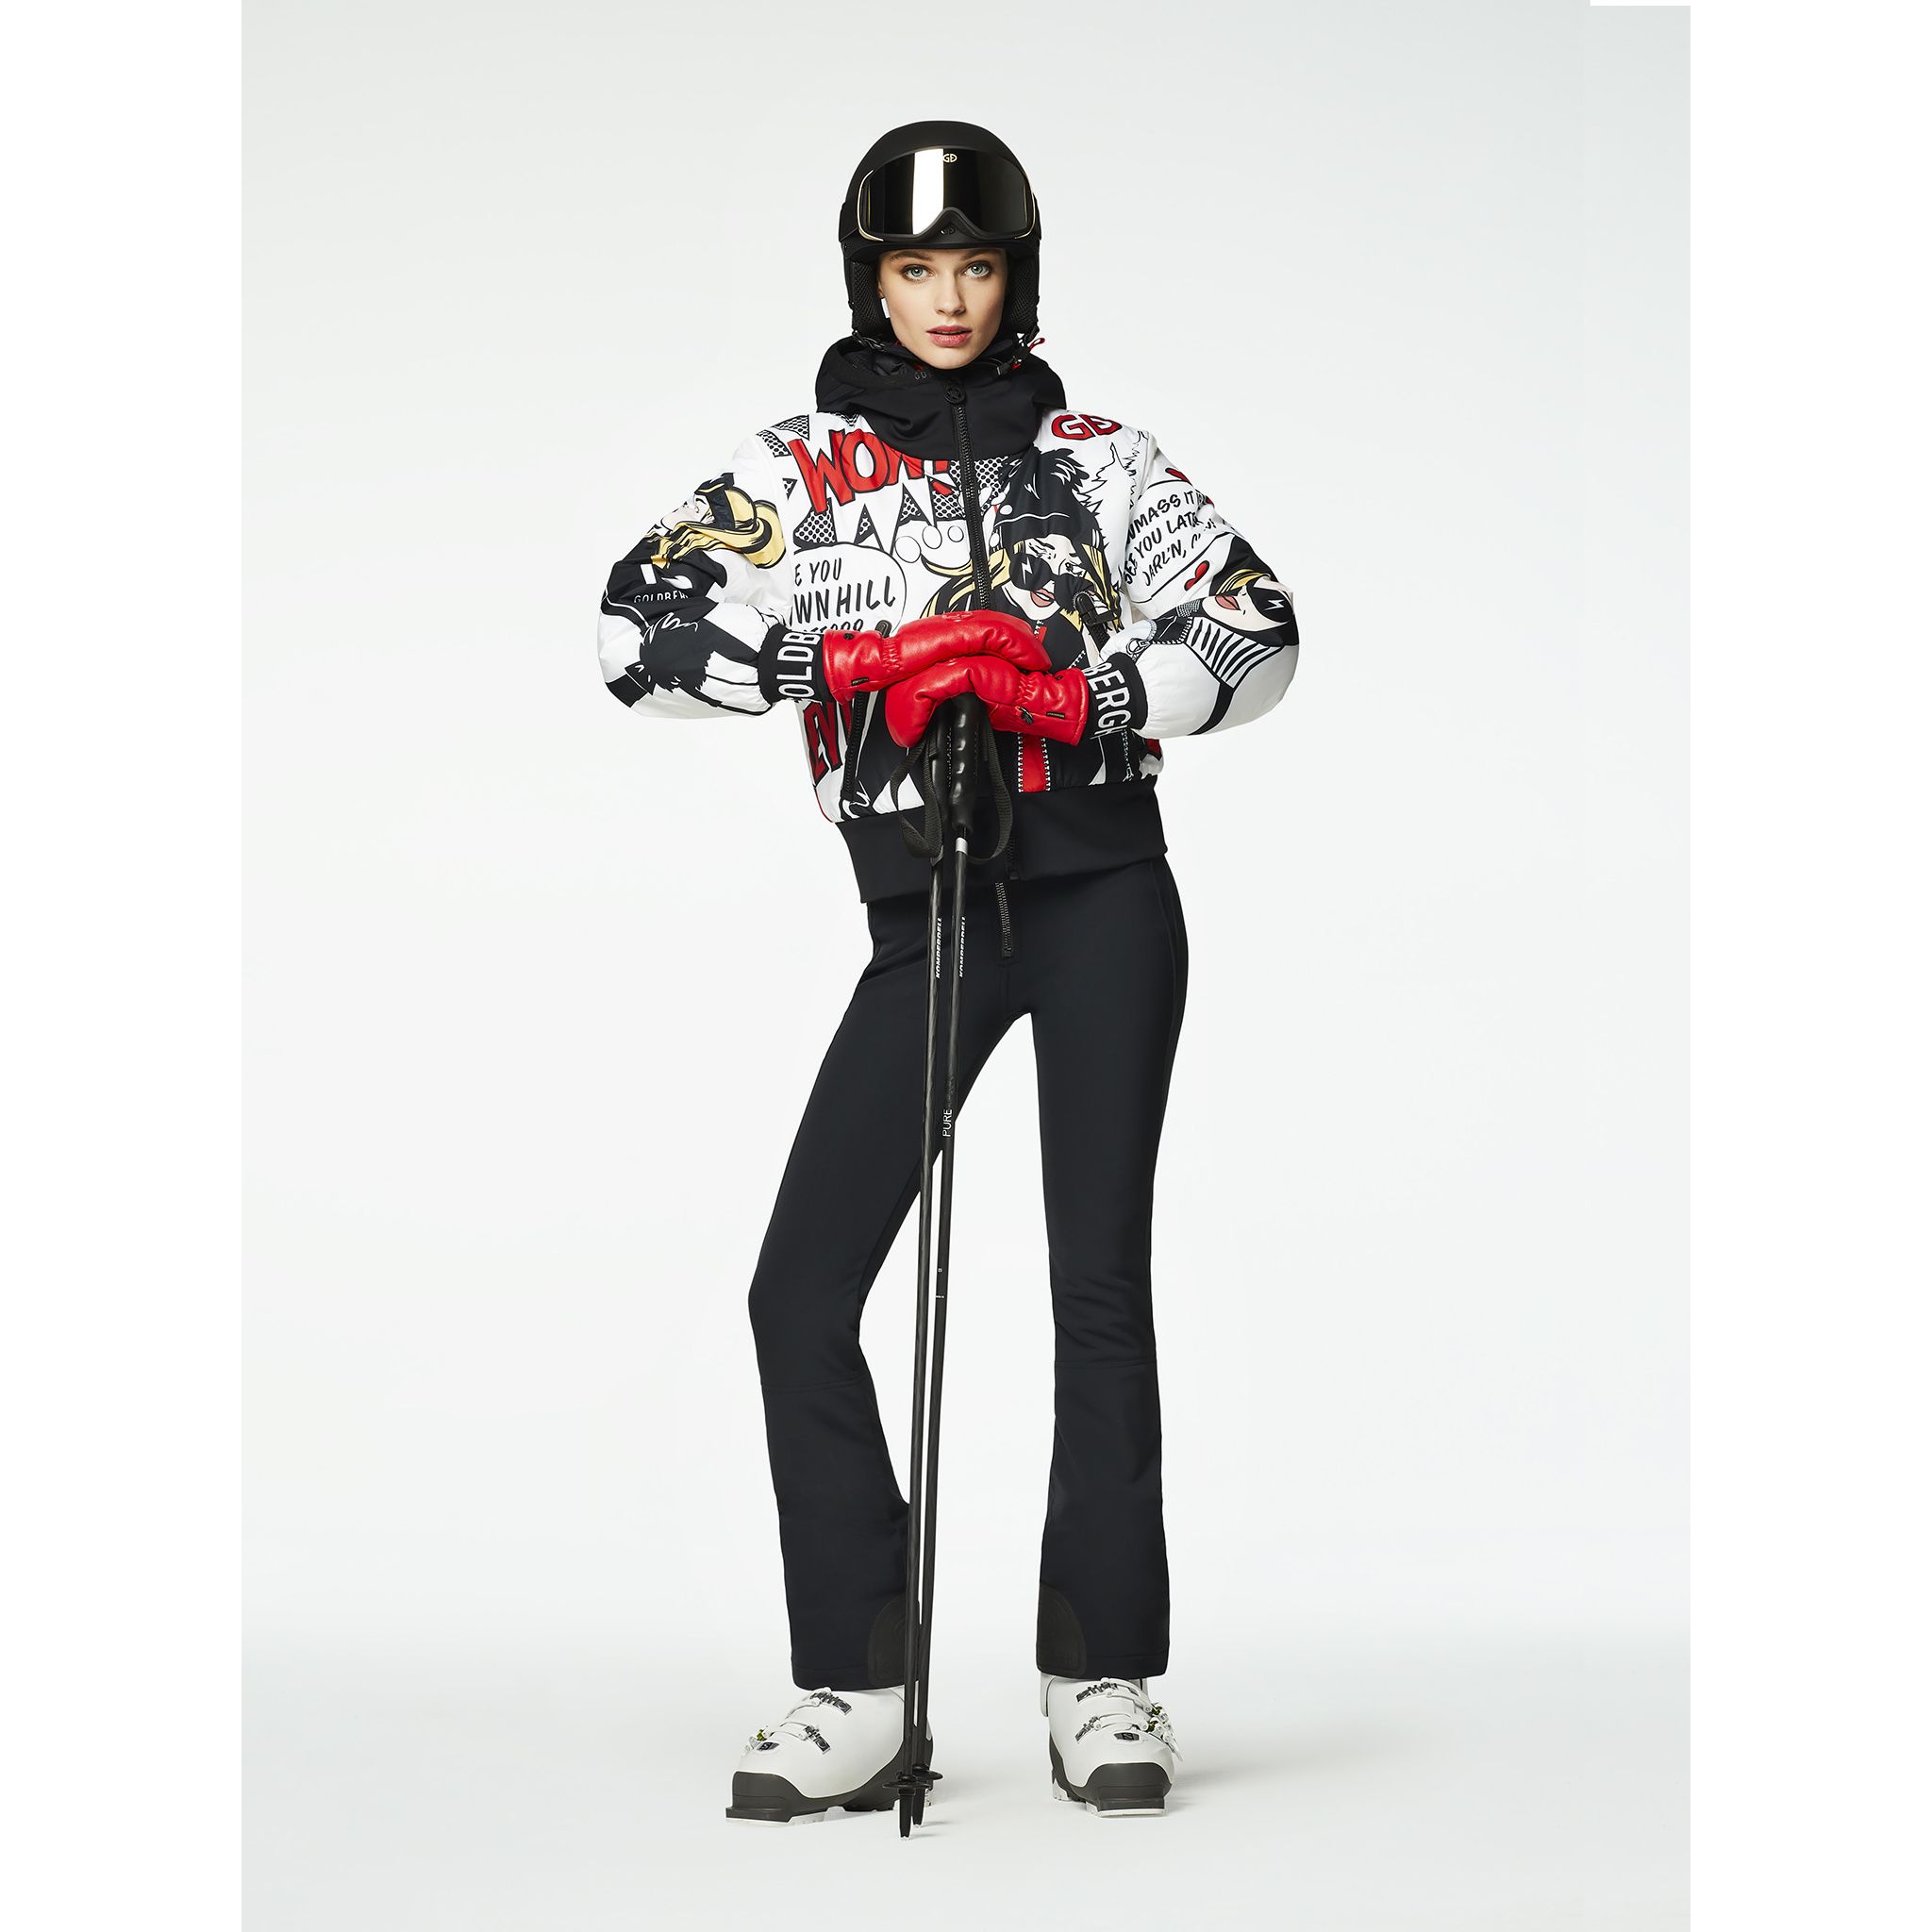 Geci Ski & Snow -  goldbergh WOW Jacket